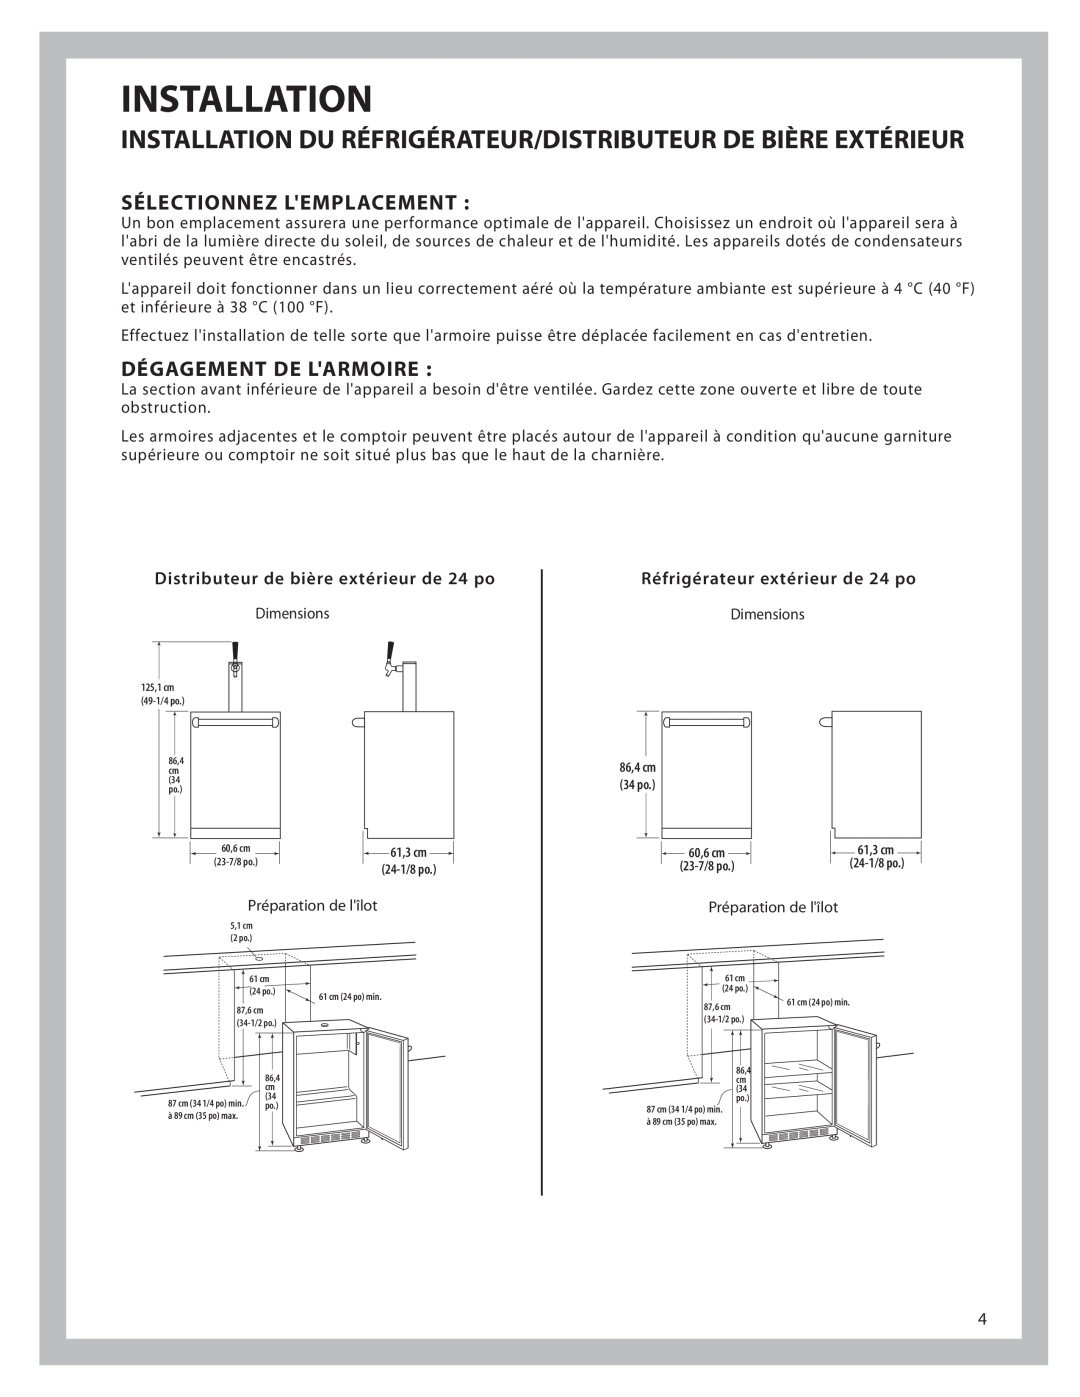 DCS UT624 Installation Du Réfrigérateur/Distributeur De Bière Extérieur, Sélectionnez Lemplacement, Dégagement De Larmoire 